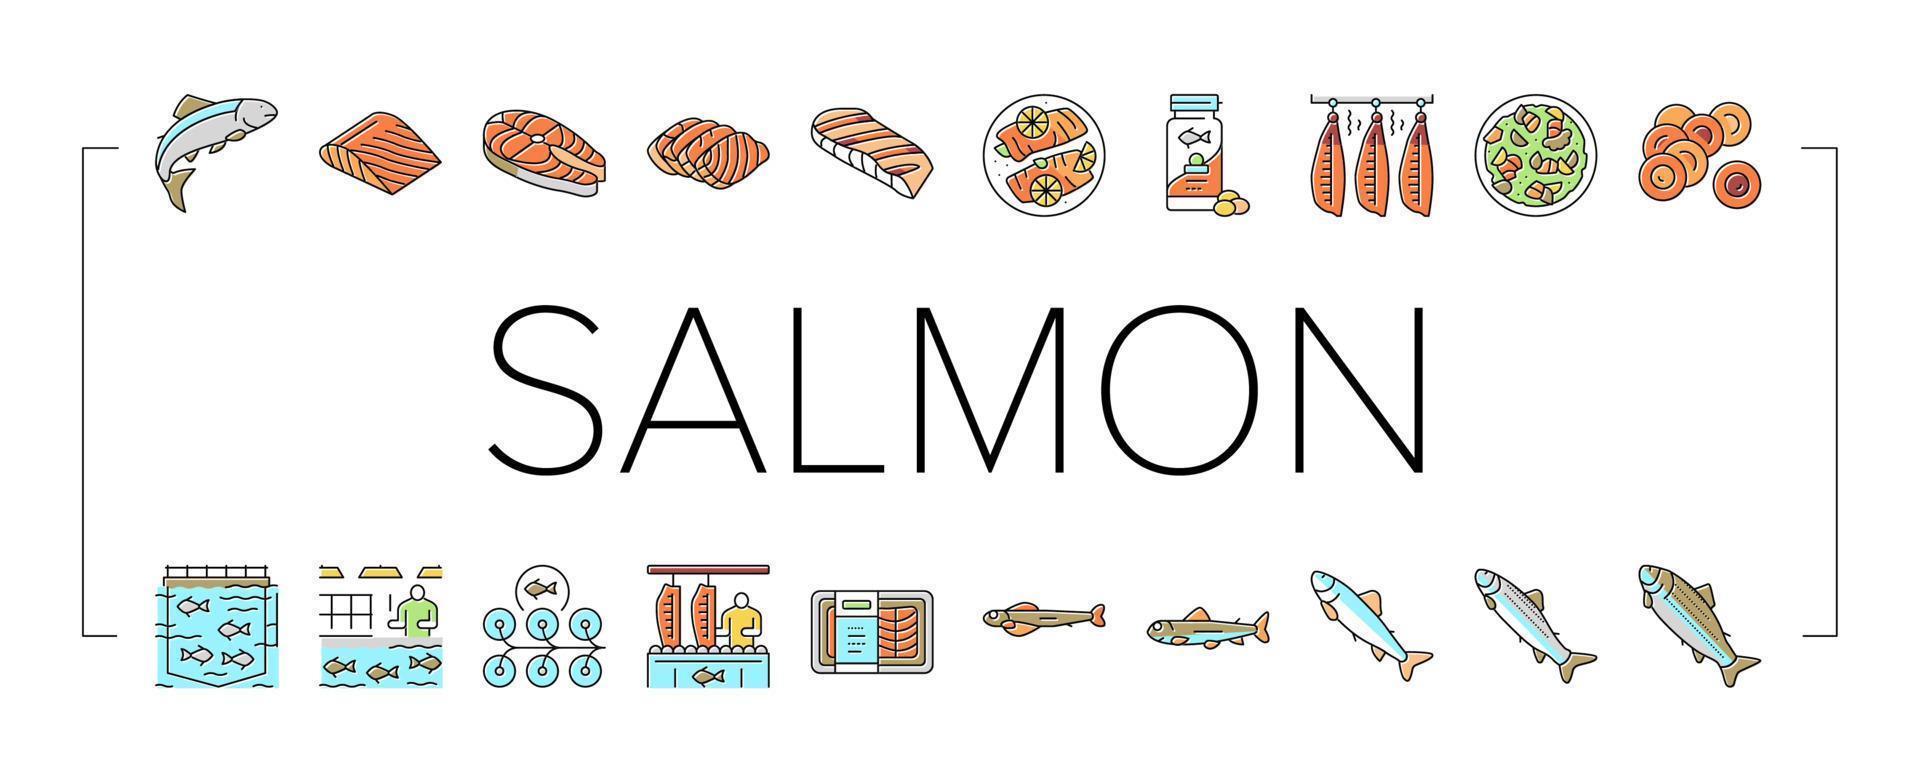 salmón, pescado, delicioso, mariscos, iconos, conjunto, vector